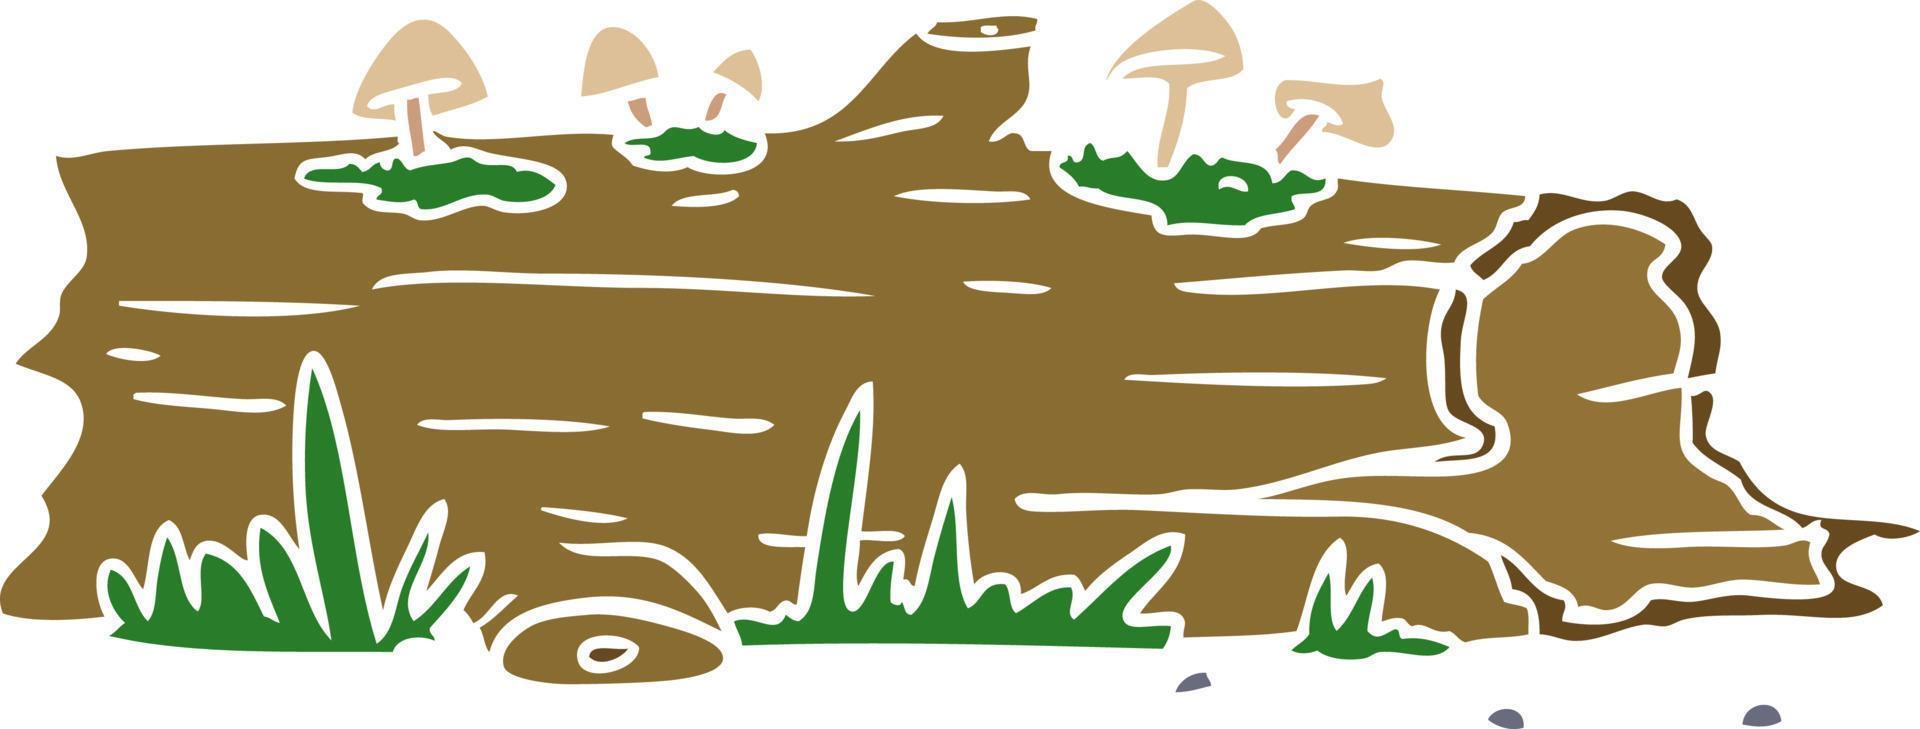 dessin animé doodle d'une bûche d'arbre vecteur